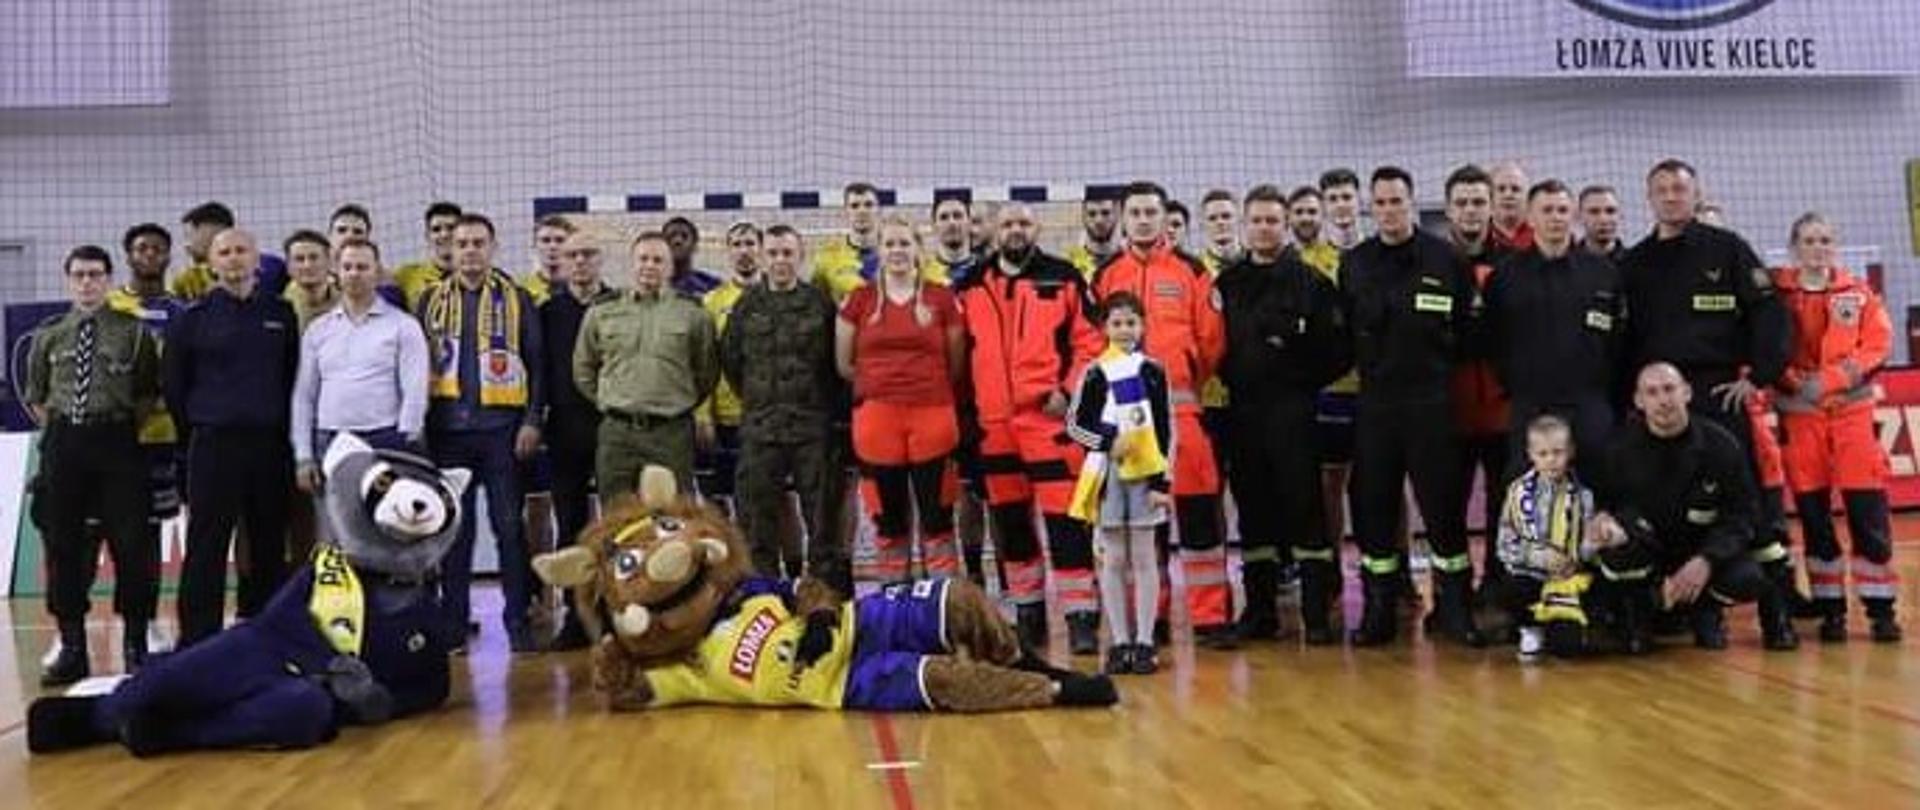 Zdjęcie przedstawia zgromadzonych na meczu przedstawicieli zaproszonych służb mundurowych, medycznych oraz wolontariuszy wraz z maskotkami zespołów sportowych.